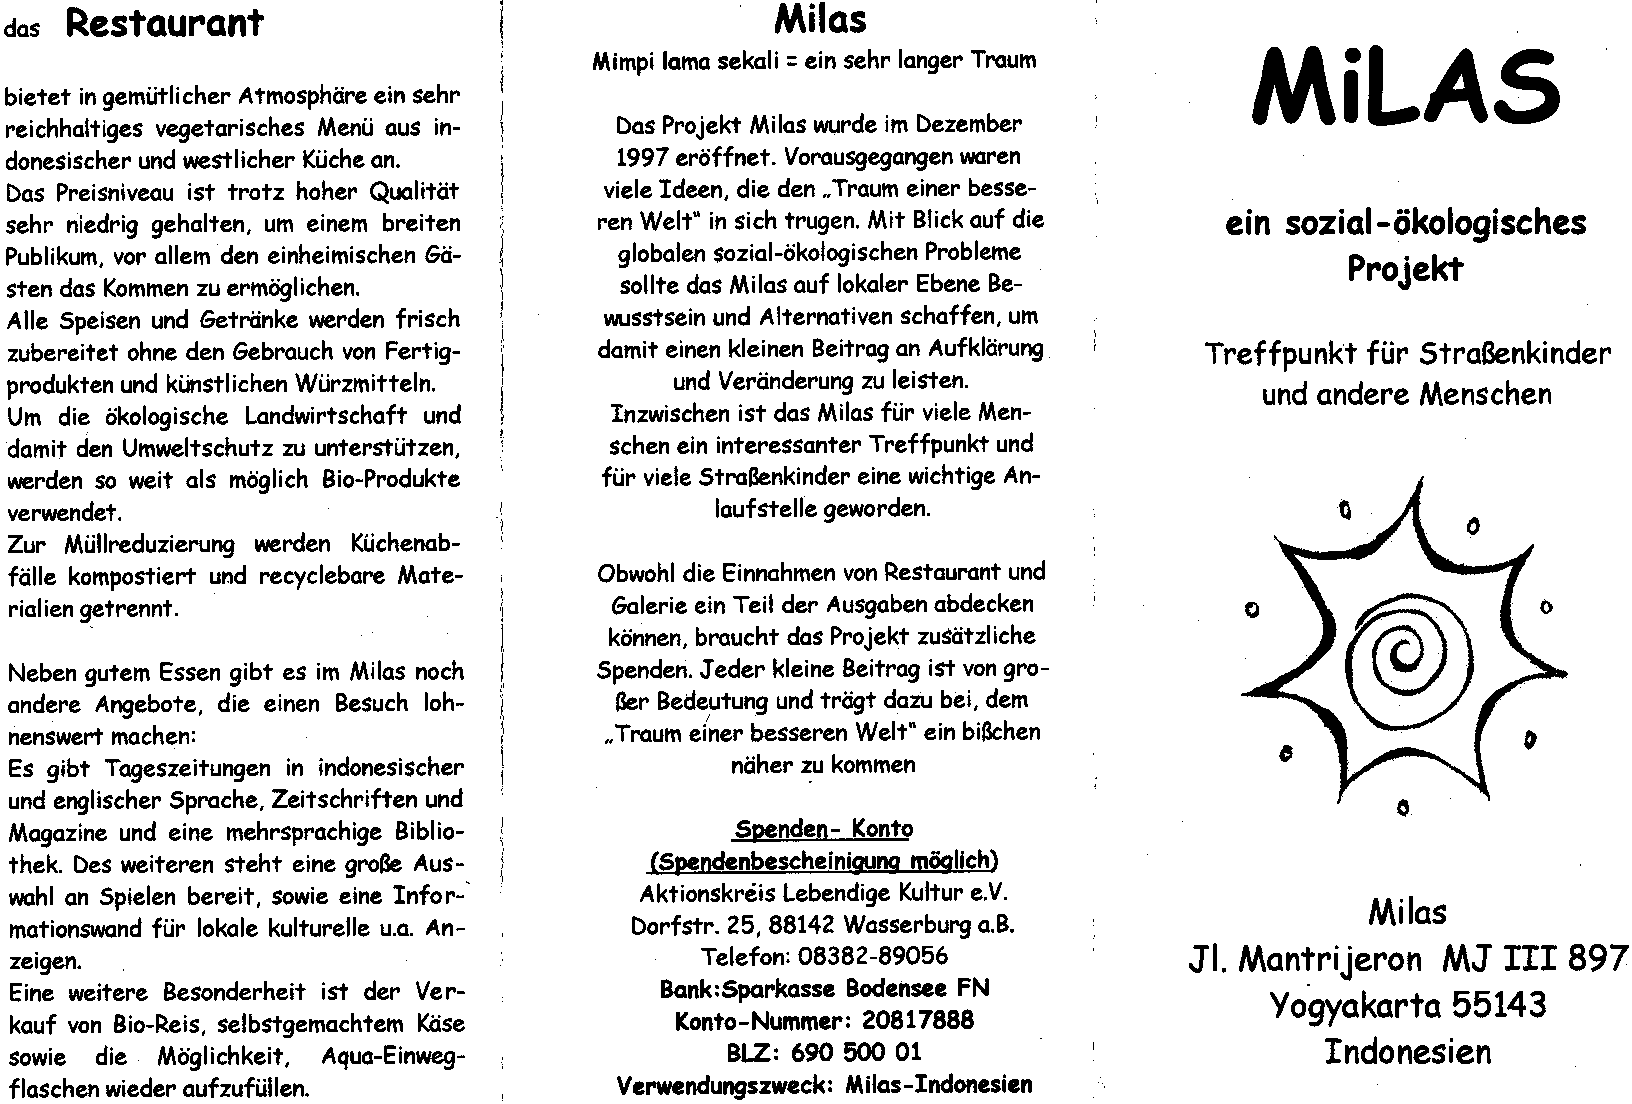 Flyer zum Milas